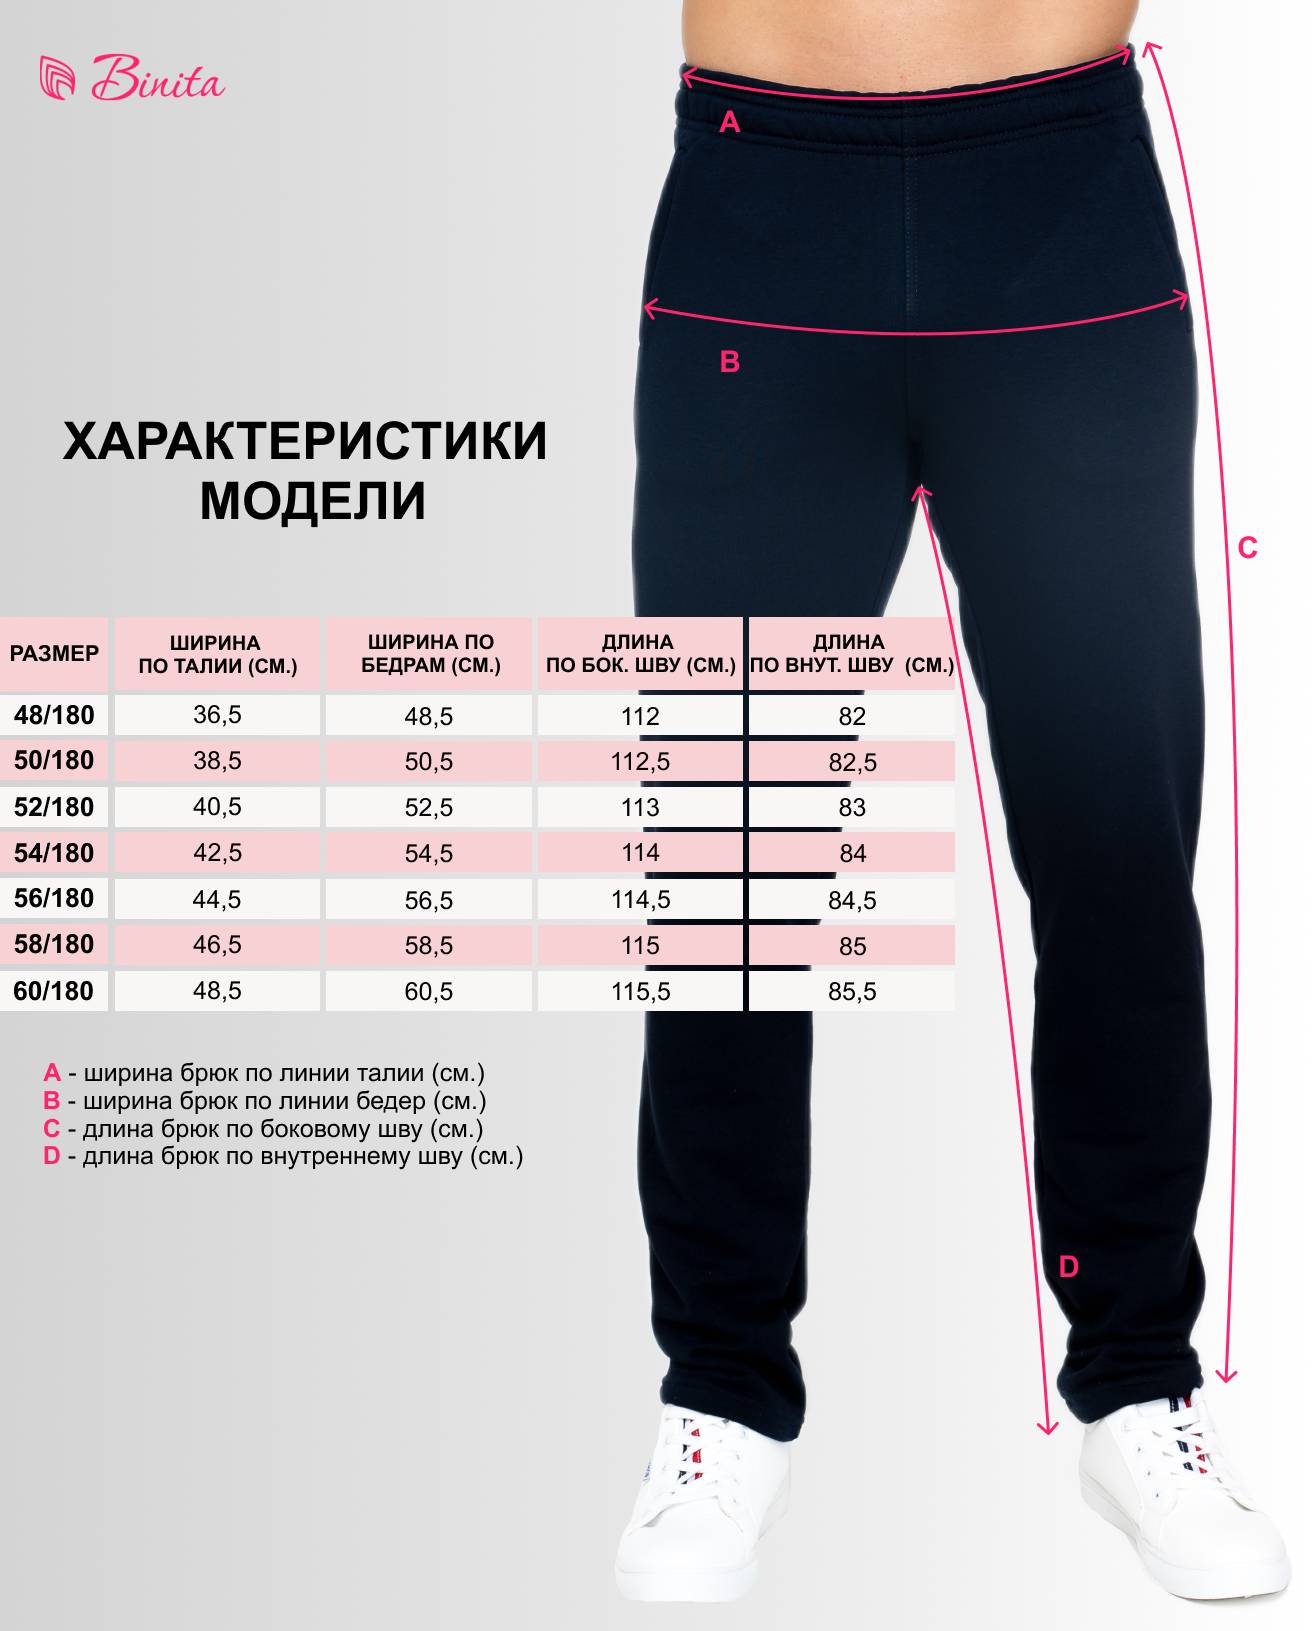 Как выбрать размер спортивные штаны мужские